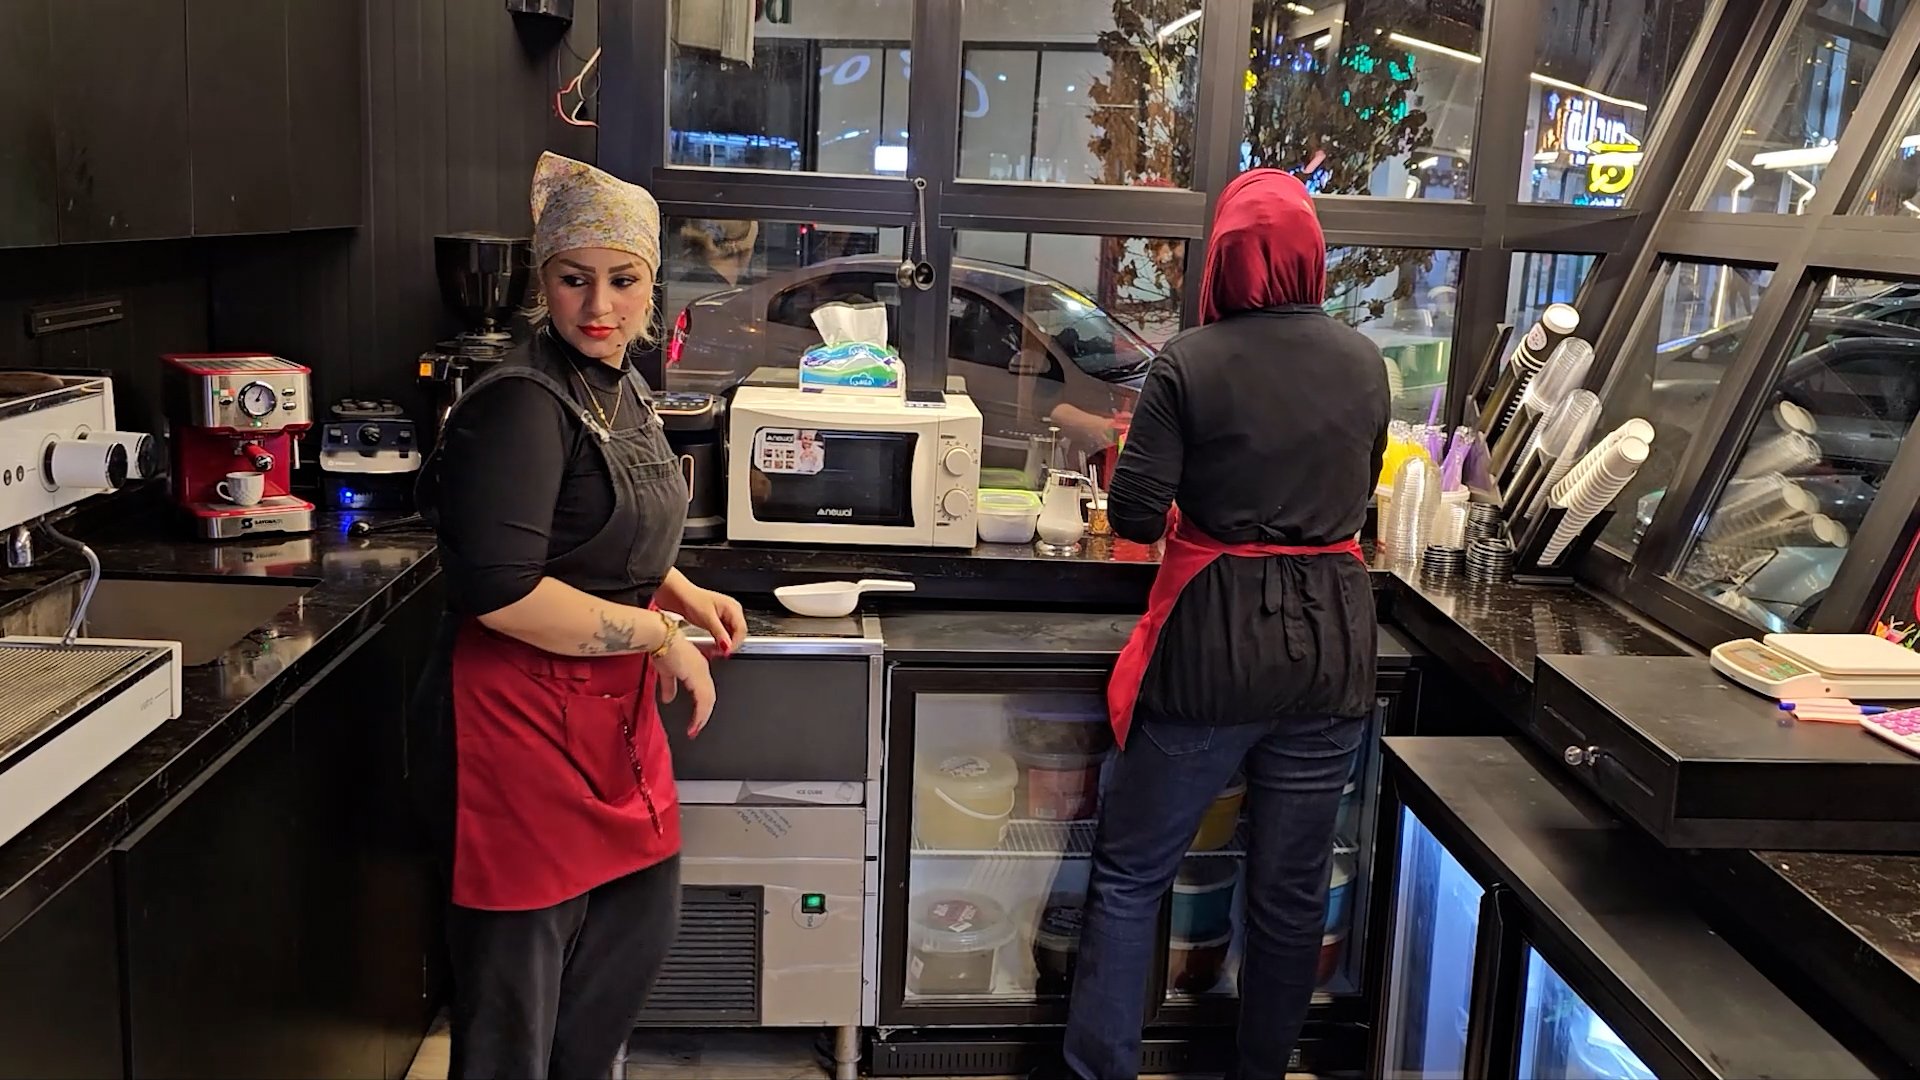 فيديو: لا أحد يضايق بائعة القهوة في شوارع كركوك.. كشك مربح أغناها عن شهادتين